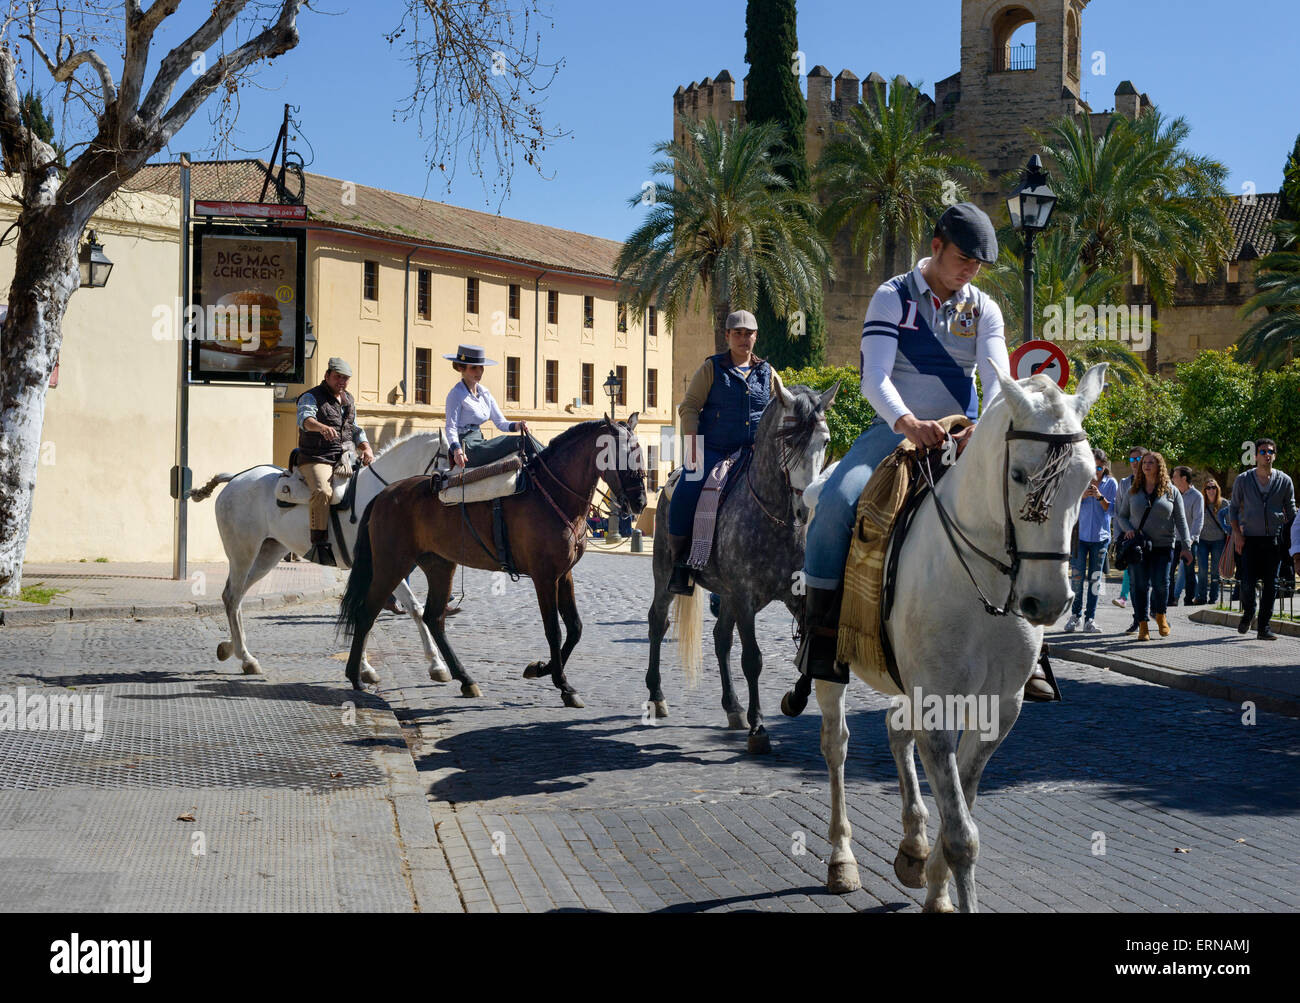 Reiter und Pferde in den Straßen von Cordoba, Spanien Stockfoto